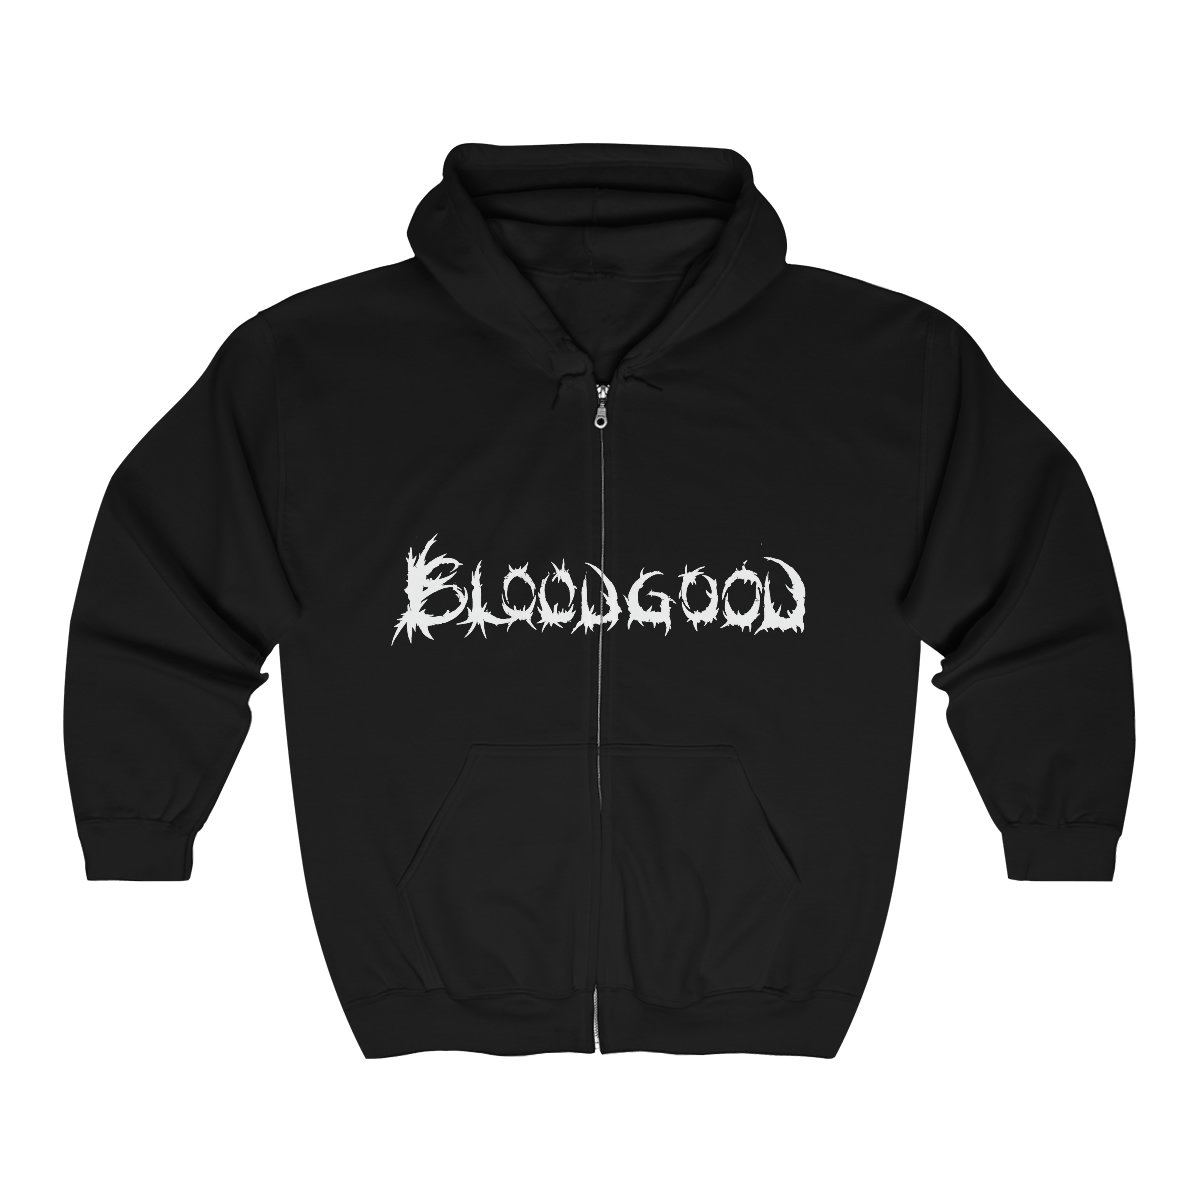 Bloodgood – Metal Missionaries Full Zip Hooded Sweatshirt